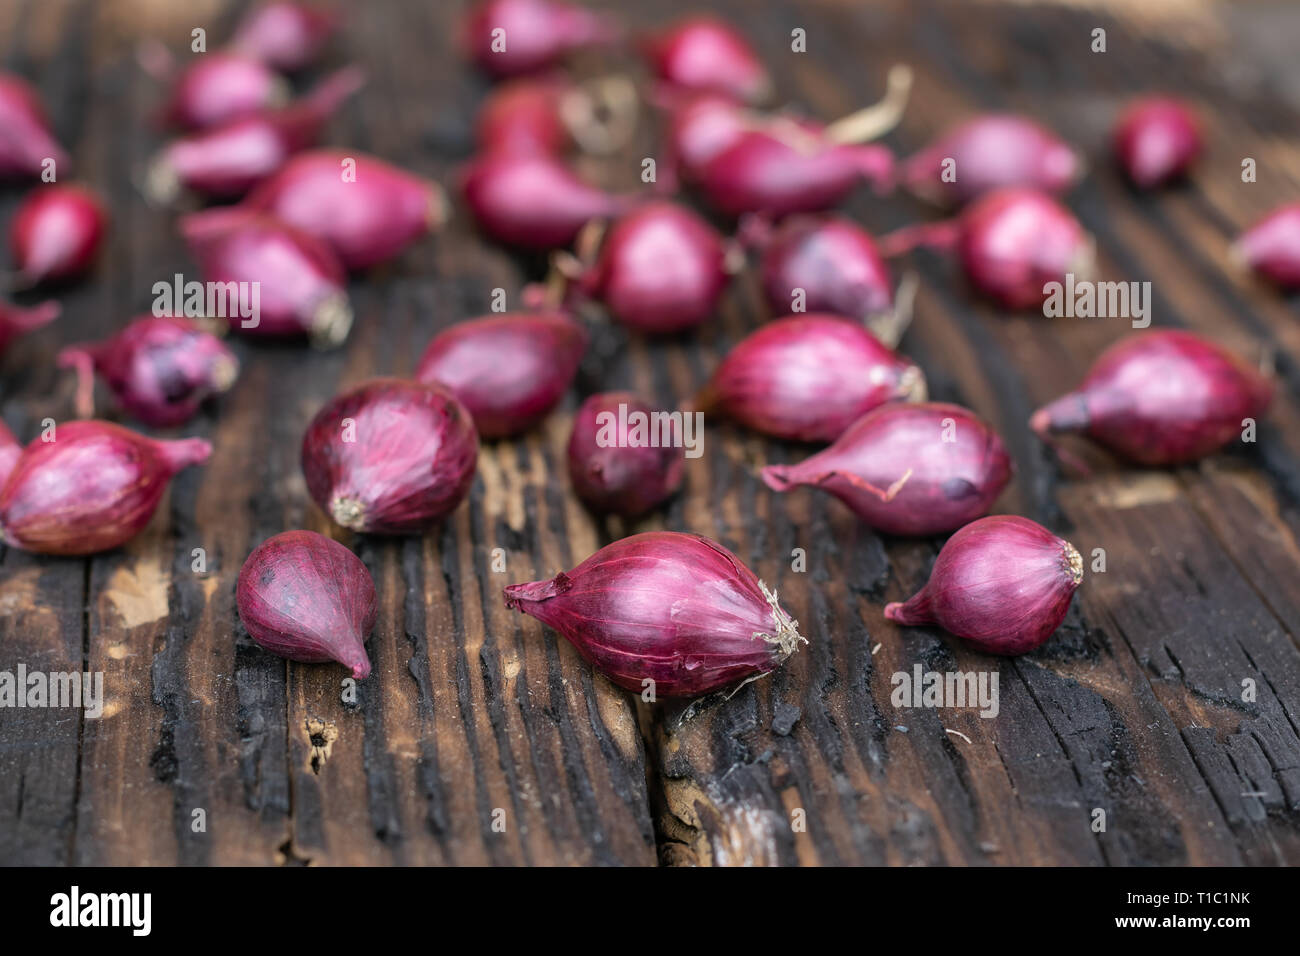 Landwirtschaft, Anbau, Landwirtschaft und Gemüse Konzept: Kleine rote Zwiebel für die Anpflanzung auf einem Hintergrund von verbranntem Holz. Stockfoto